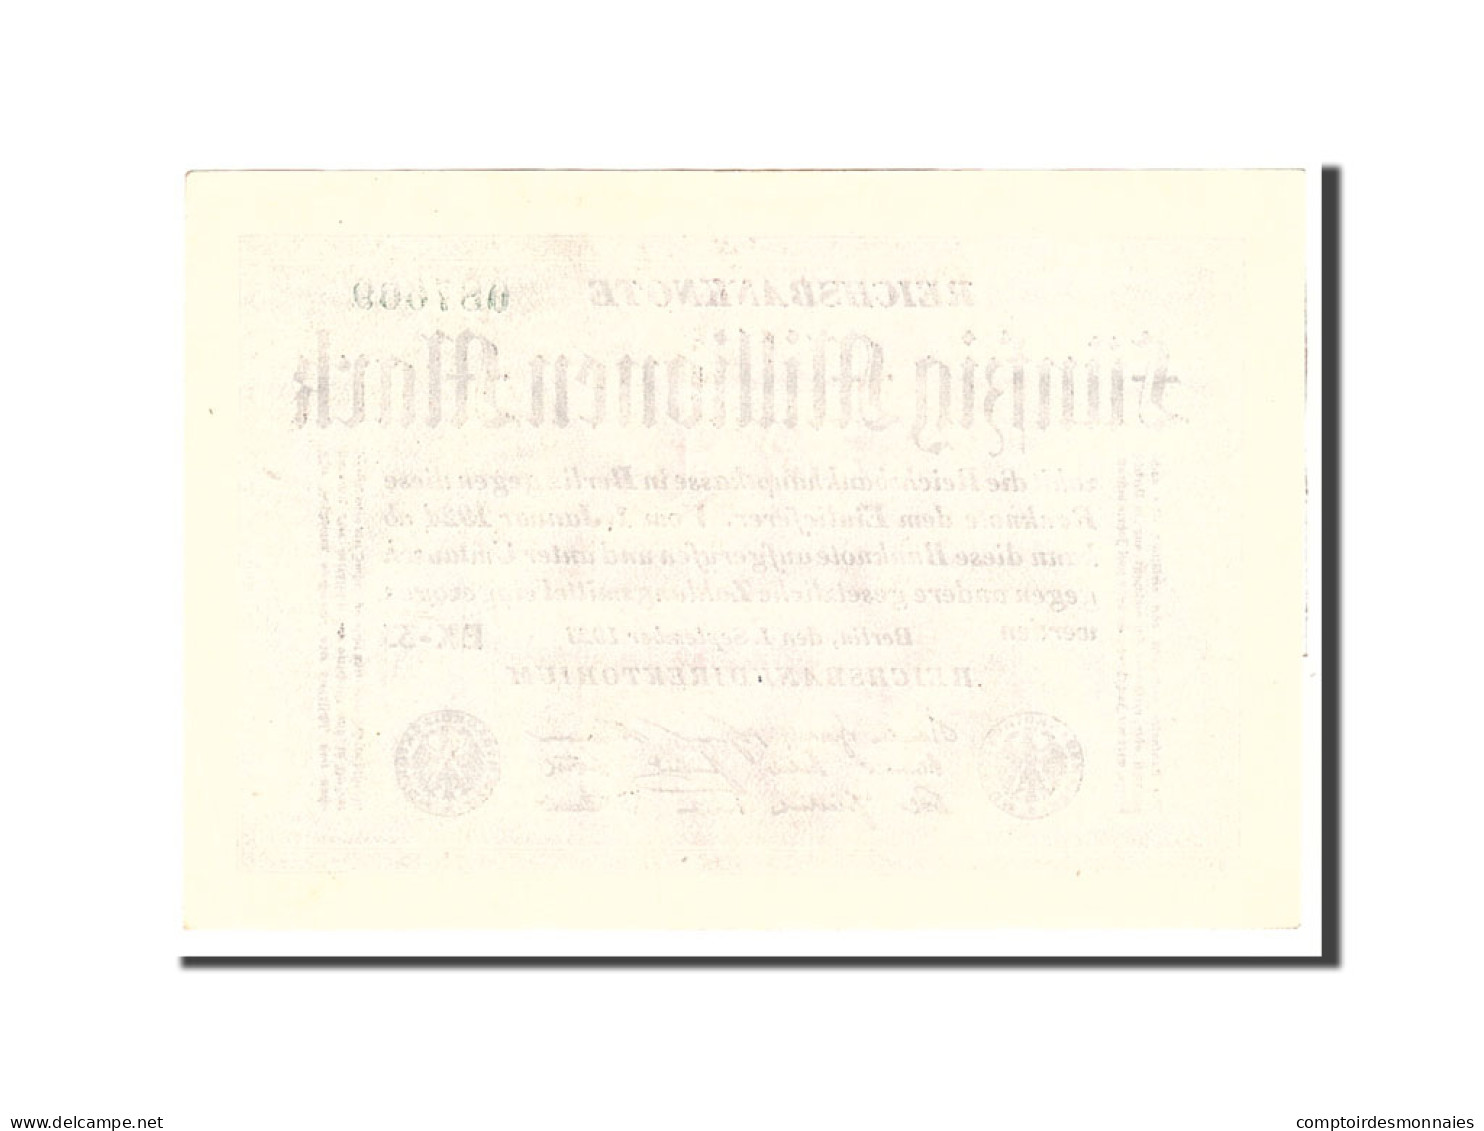 Billet, Allemagne, 50 Millionen Mark, 1923, 1923-09-01, KM:109b, SUP - 50 Mio. Mark